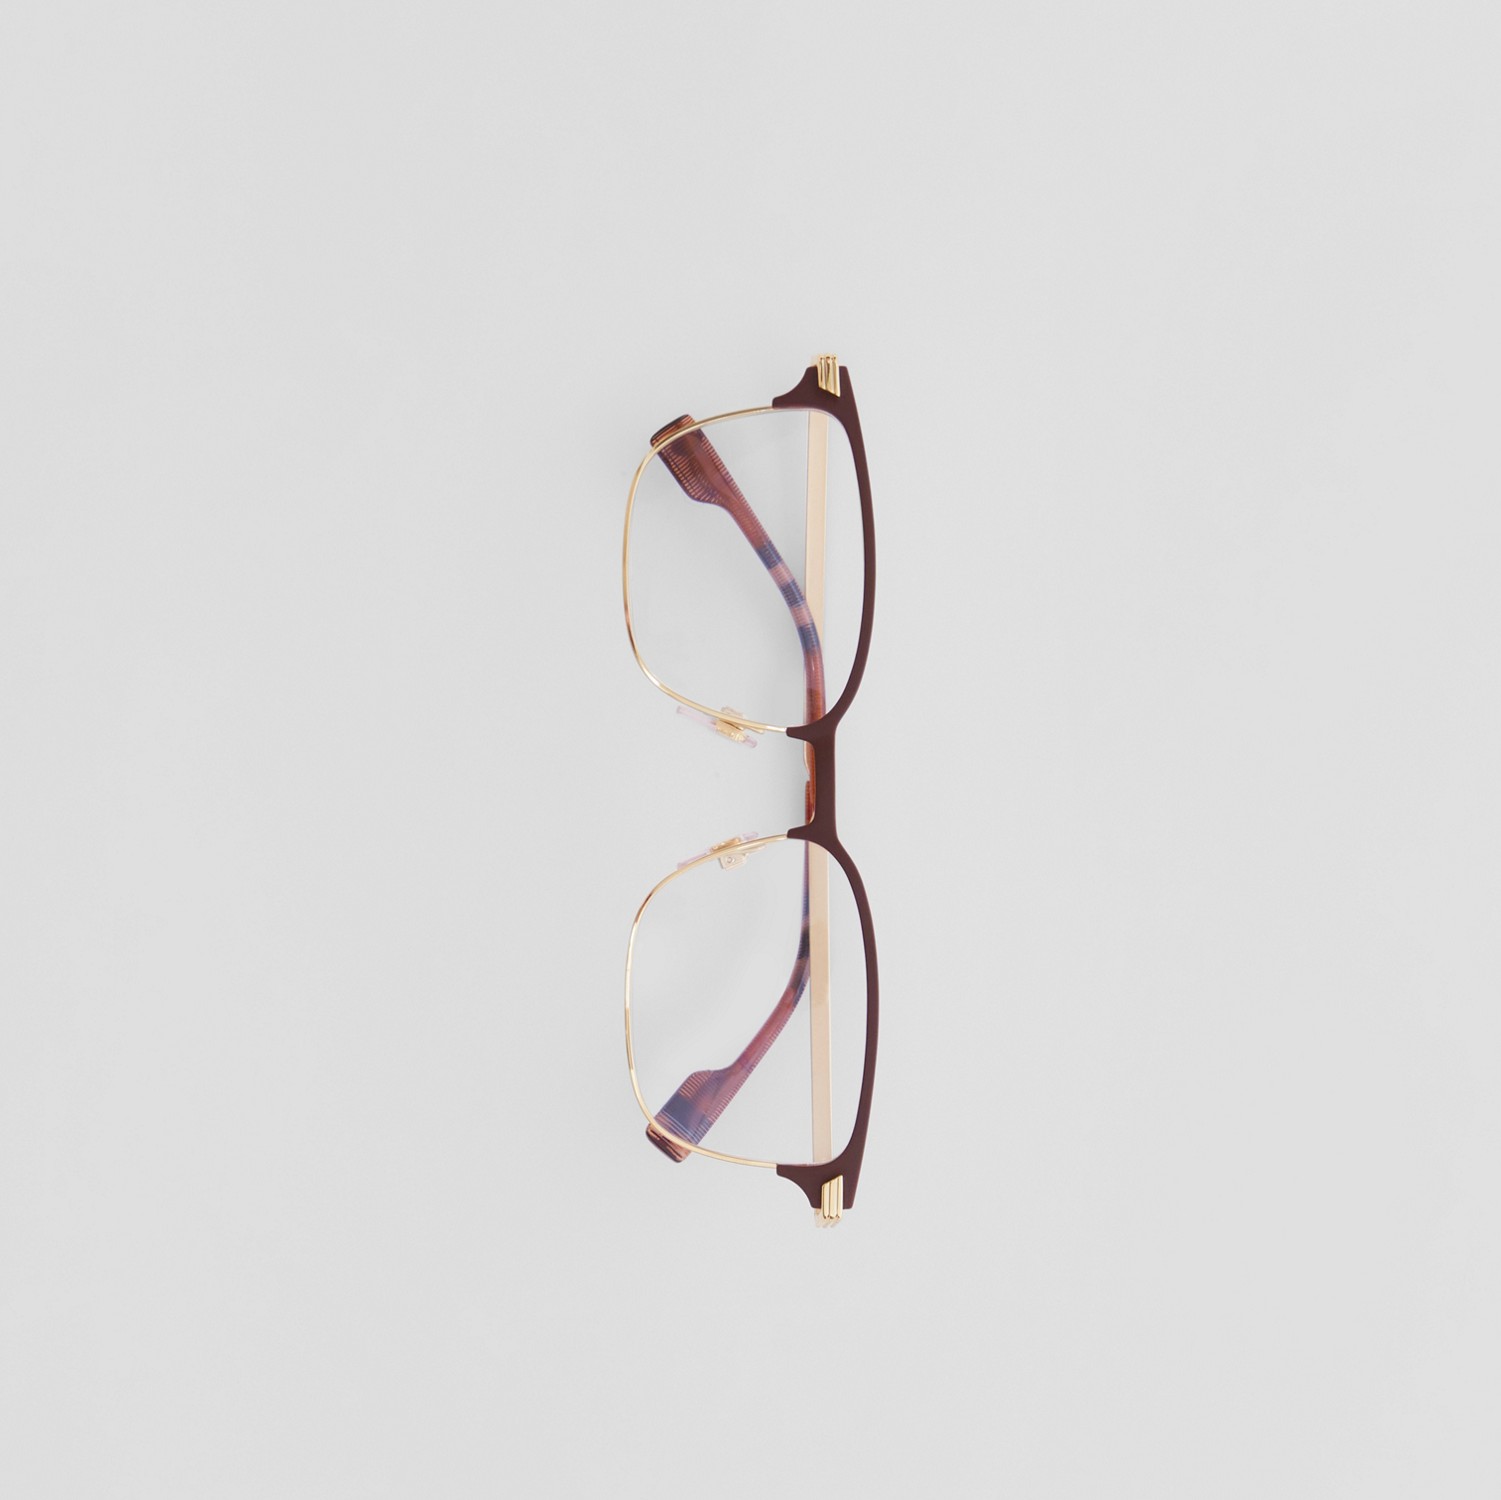 Óculos de grau com armação retangular